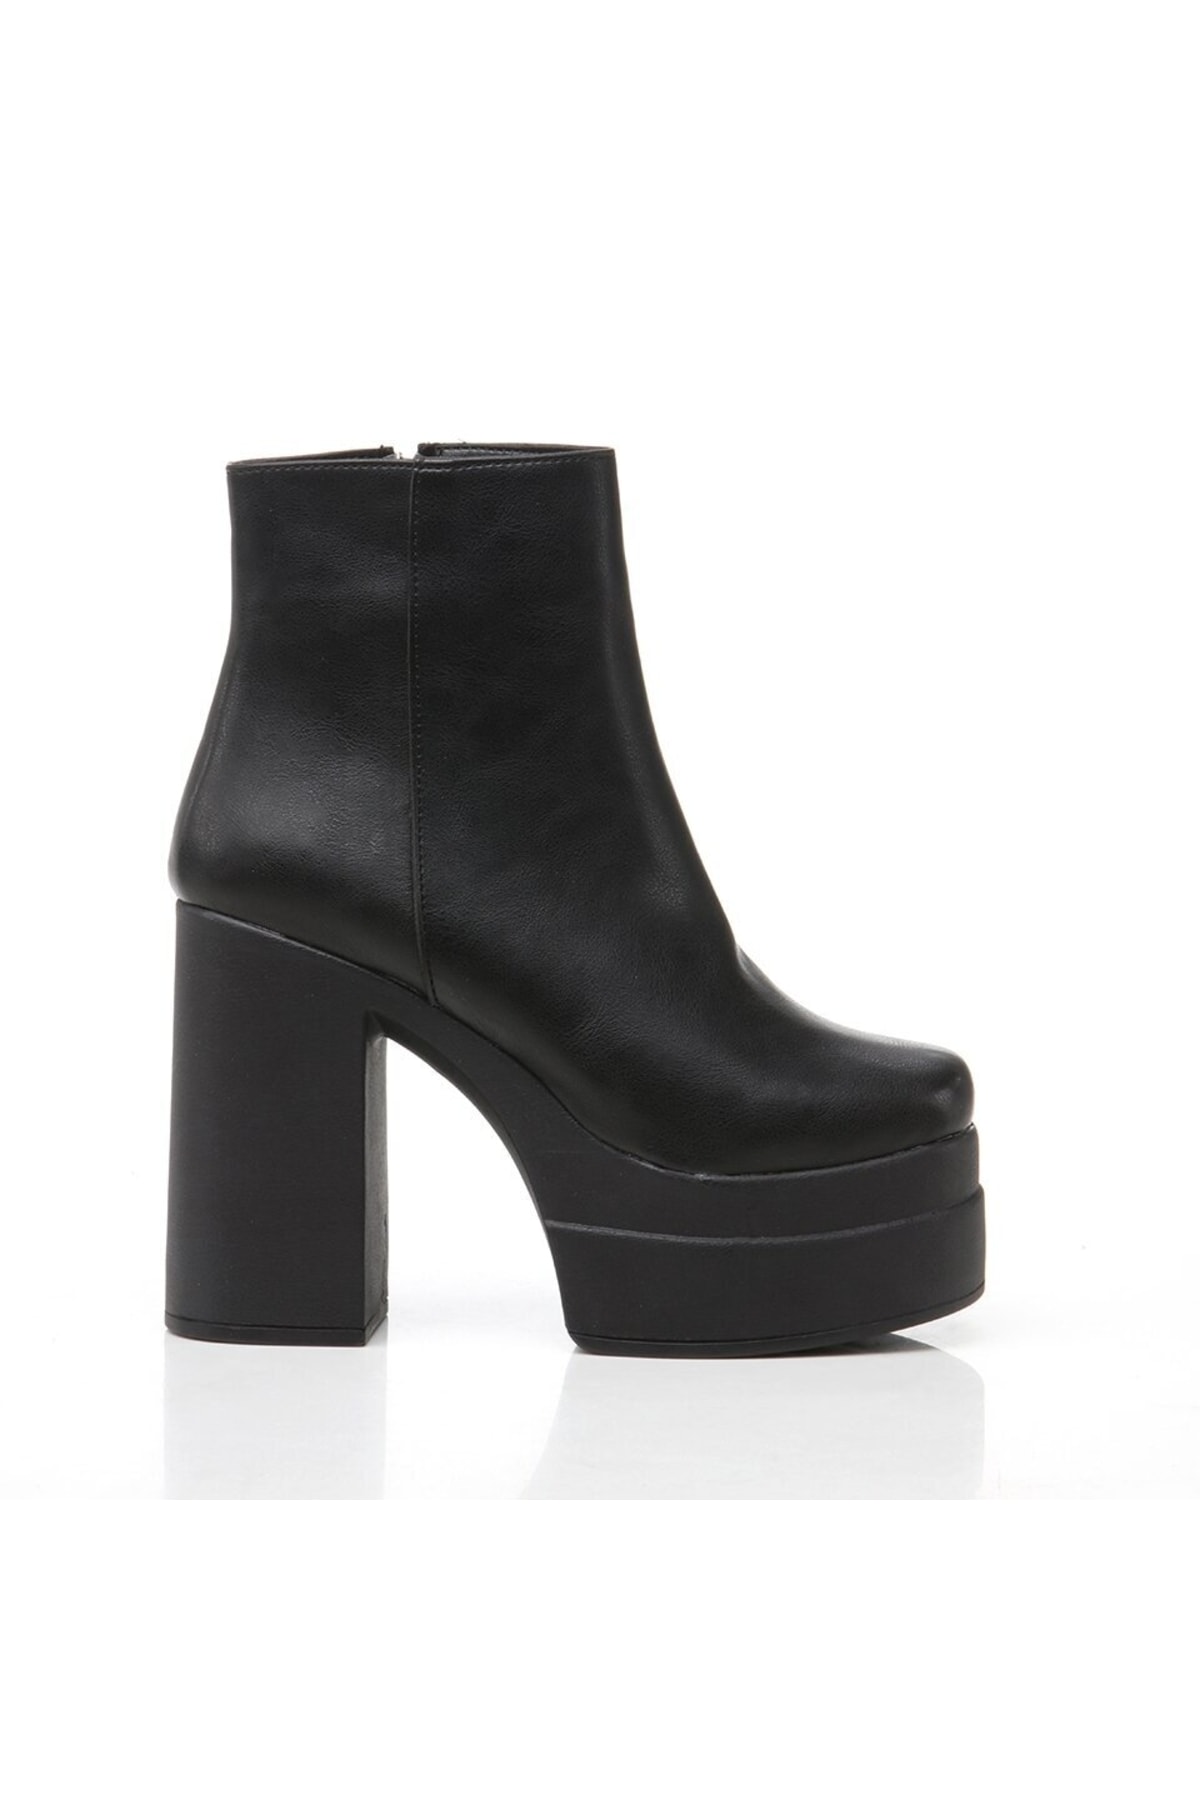 Levně Hotiç Women's Black Heeled Boots